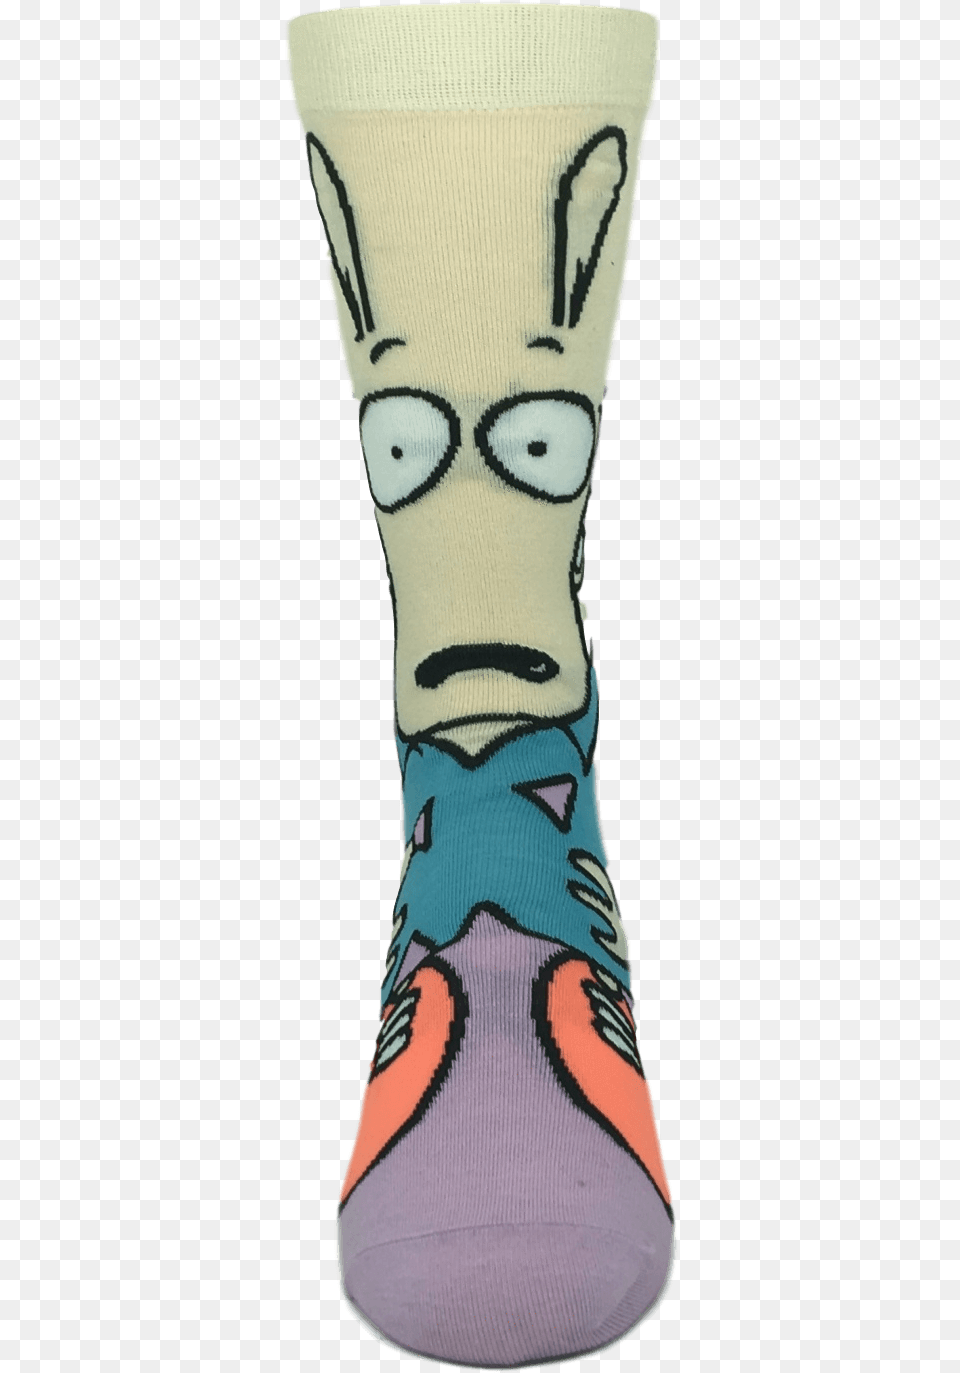 Nickelodeon Rockos Modern Life Rocko 360 Cartoon Socks Sock, Clothing, Footwear, Shoe, Hosiery Free Transparent Png